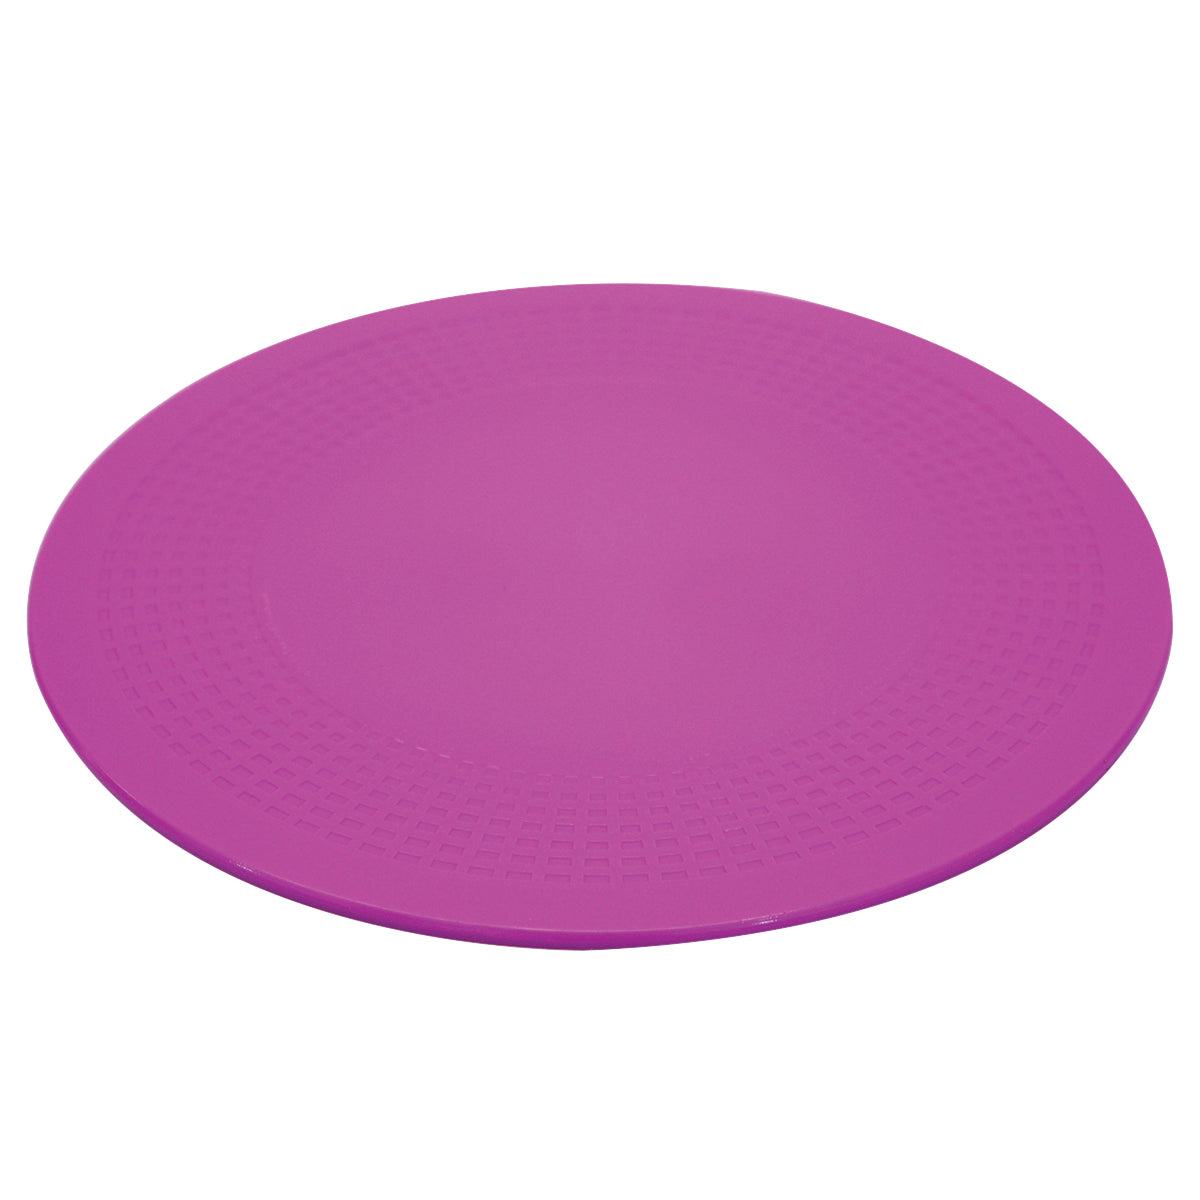 Dycem No Slip Placemats :: no slip table mats